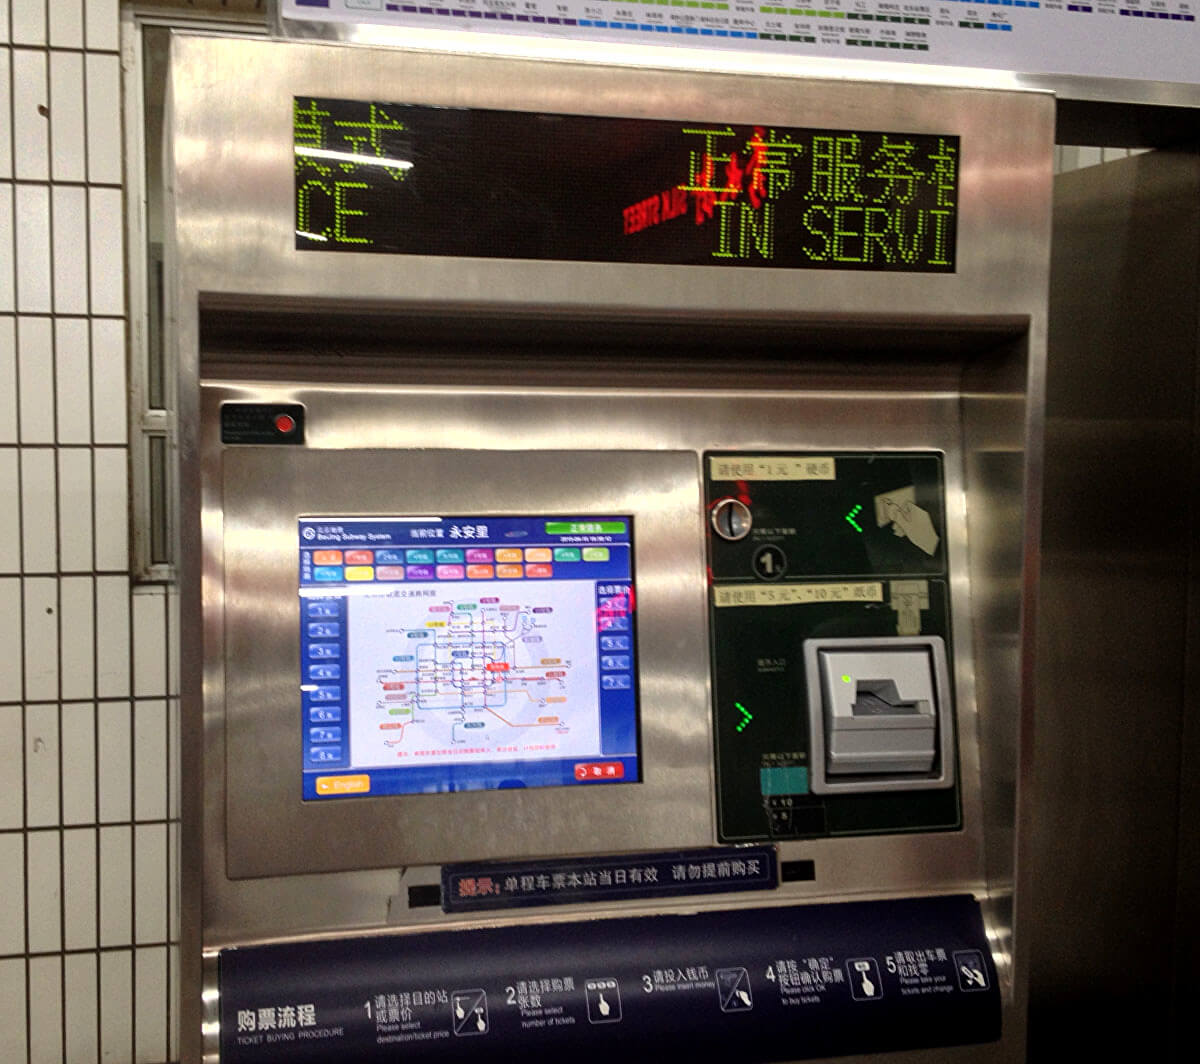 Beijing Metro - Ticket Machines